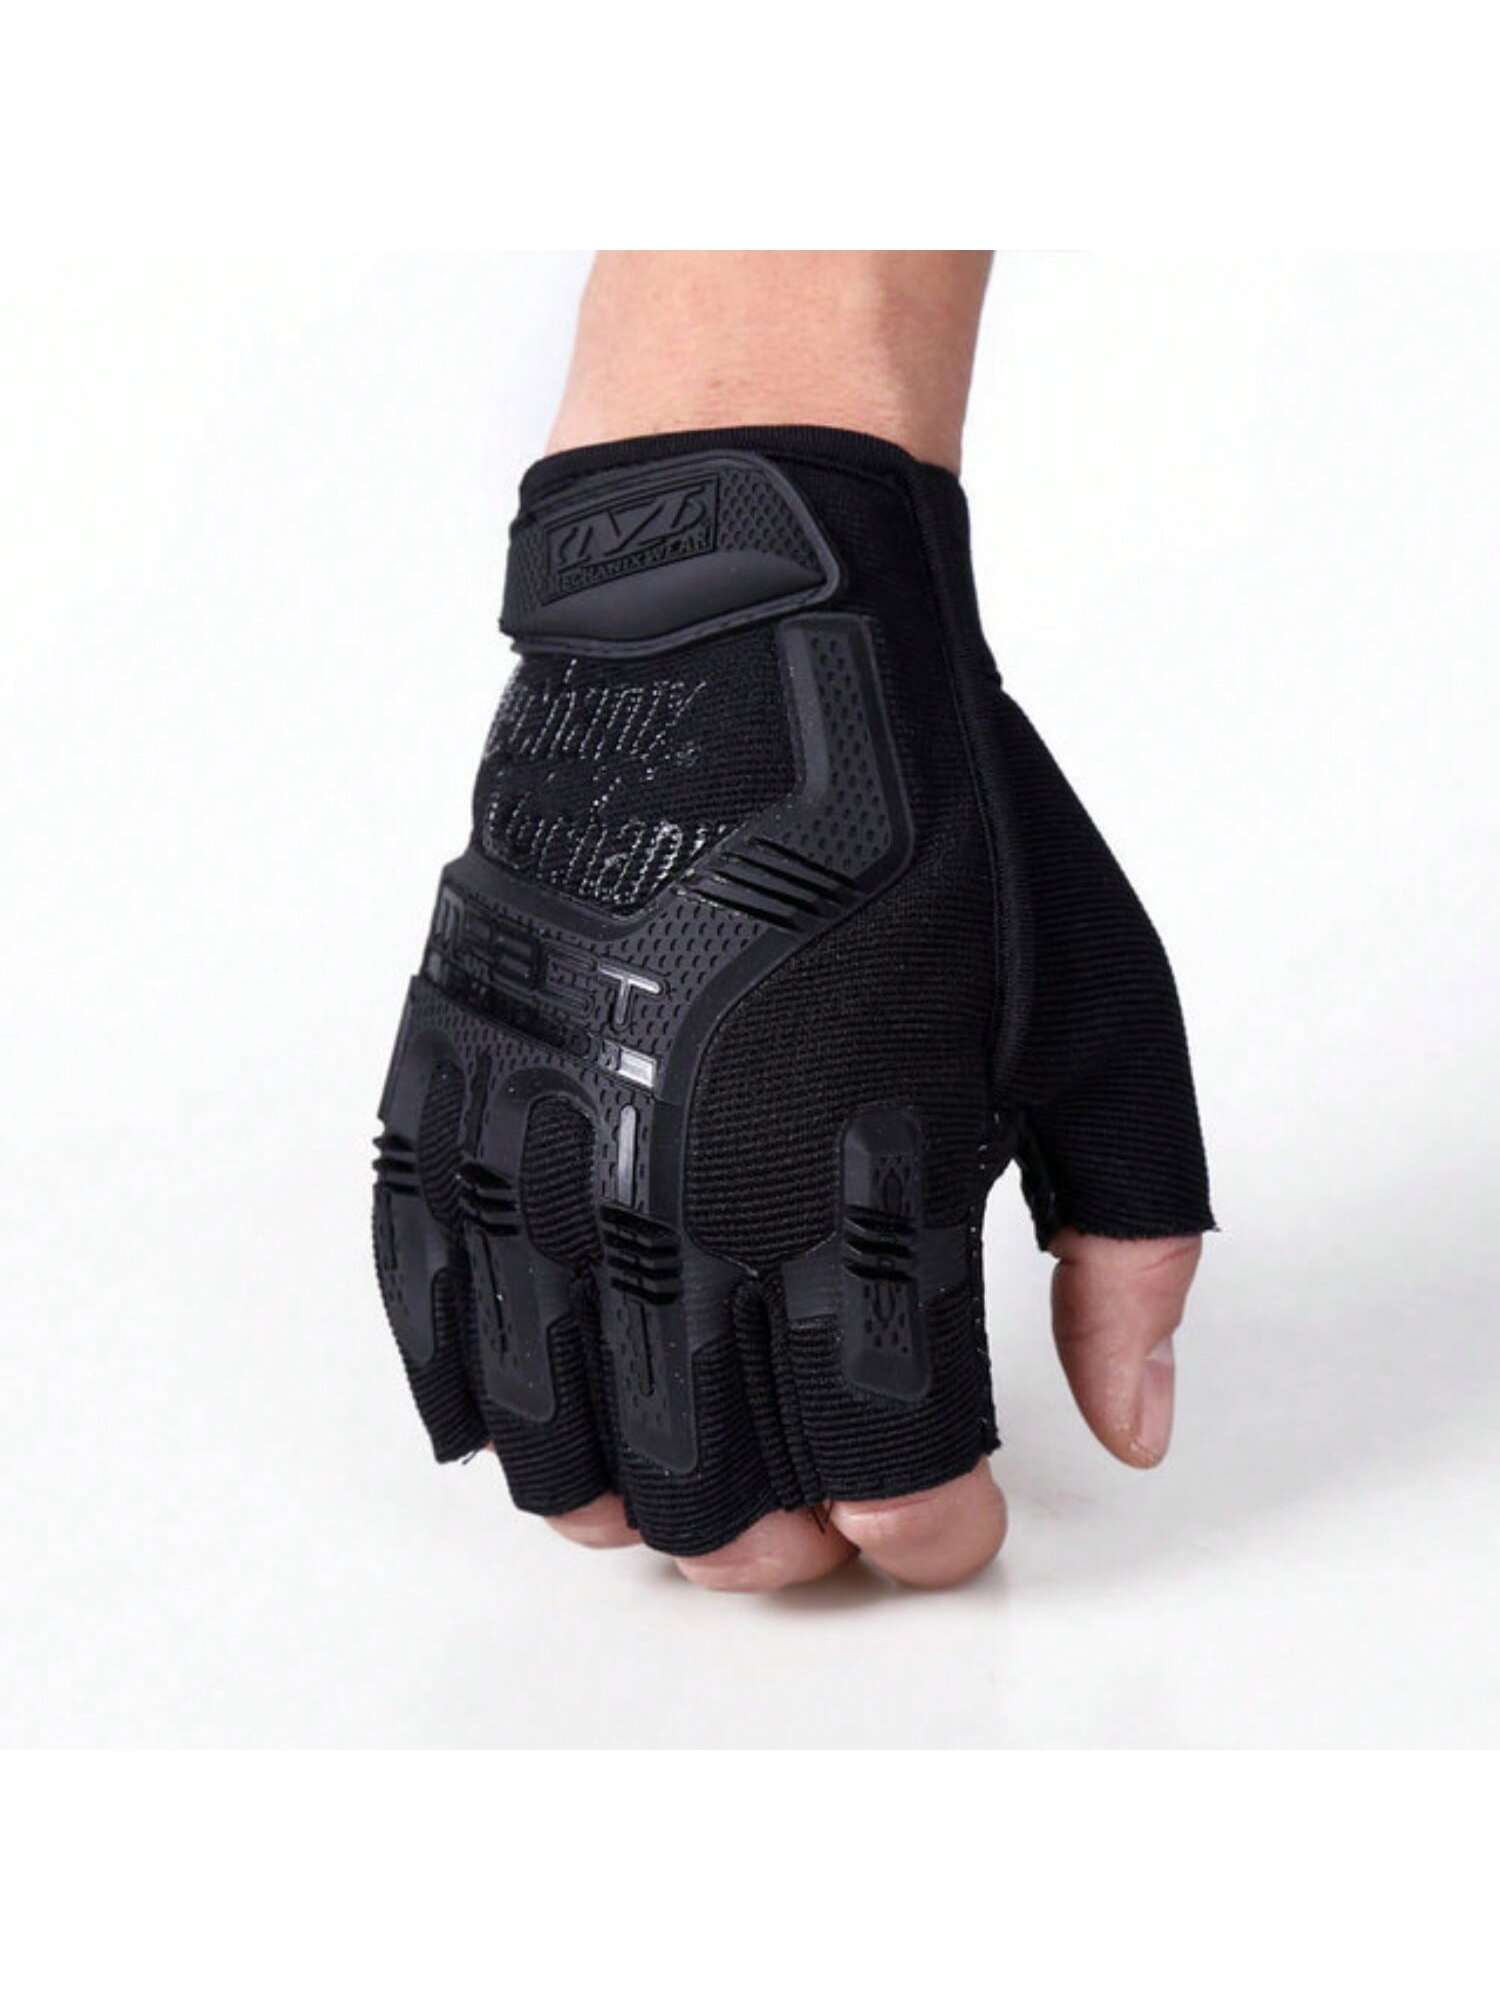 Ανδρικά μαύρα γάντια Ηalf Finger Αντιολισθητικά & Κατά της φθοράς